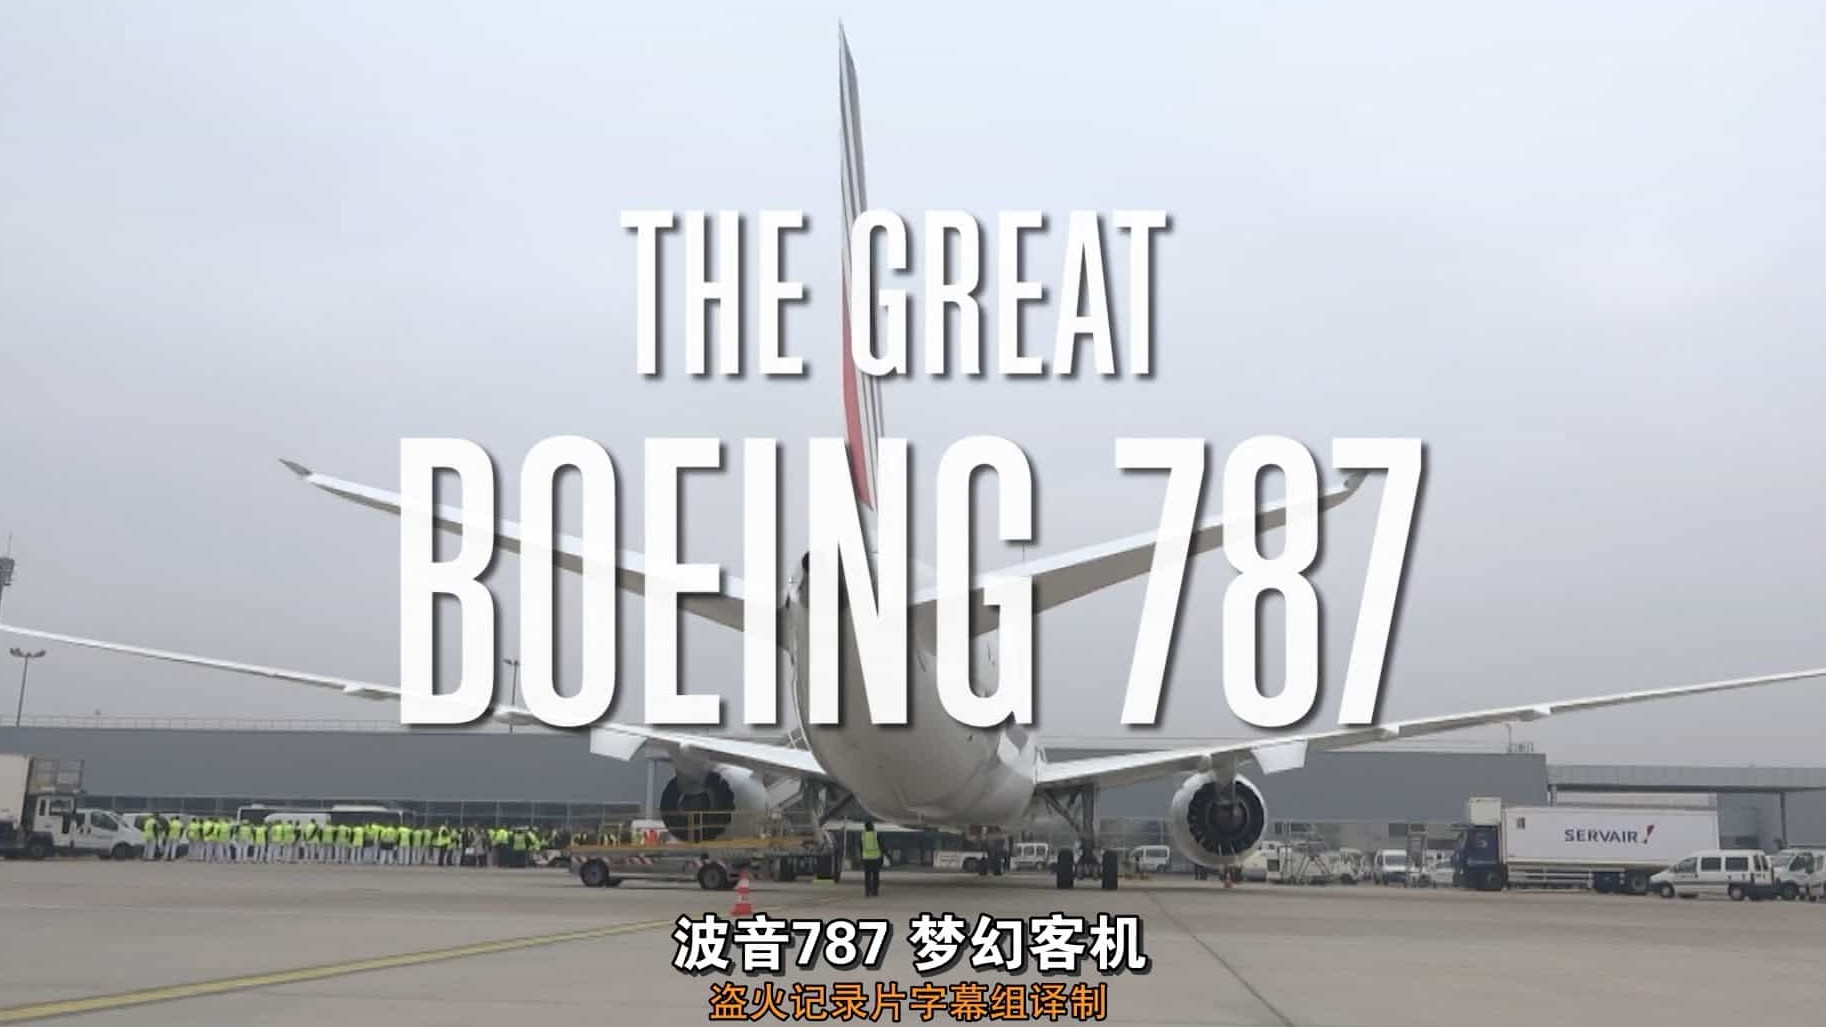 PBS纪录片/波音787制造揭秘《波音787 梦幻客机 The Great Boeing 787》全1集 英语中字 1080P高清下载